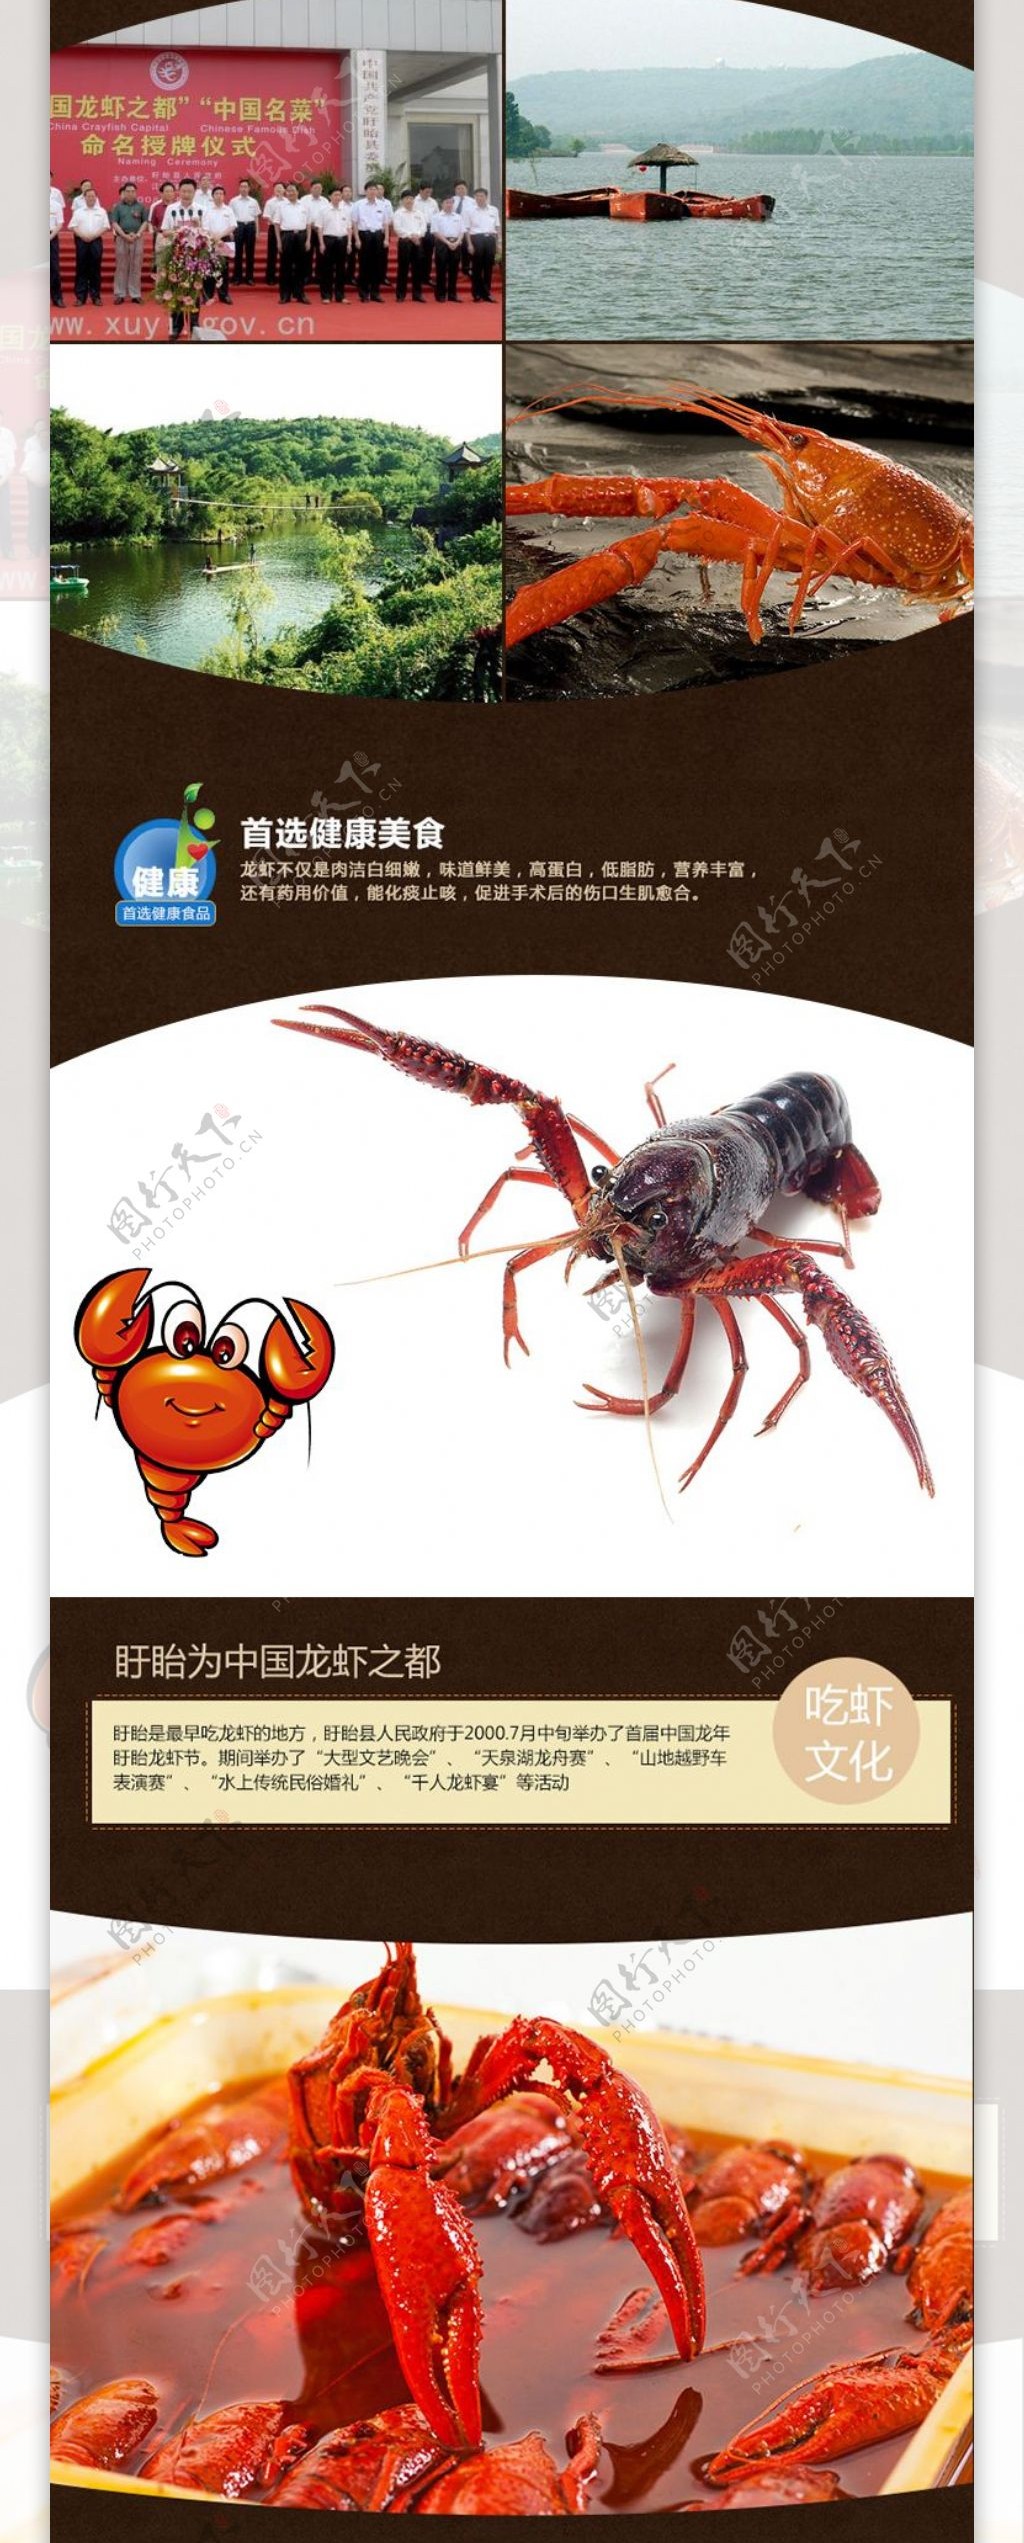 淘宝龙虾详情页设计模板PSD素材